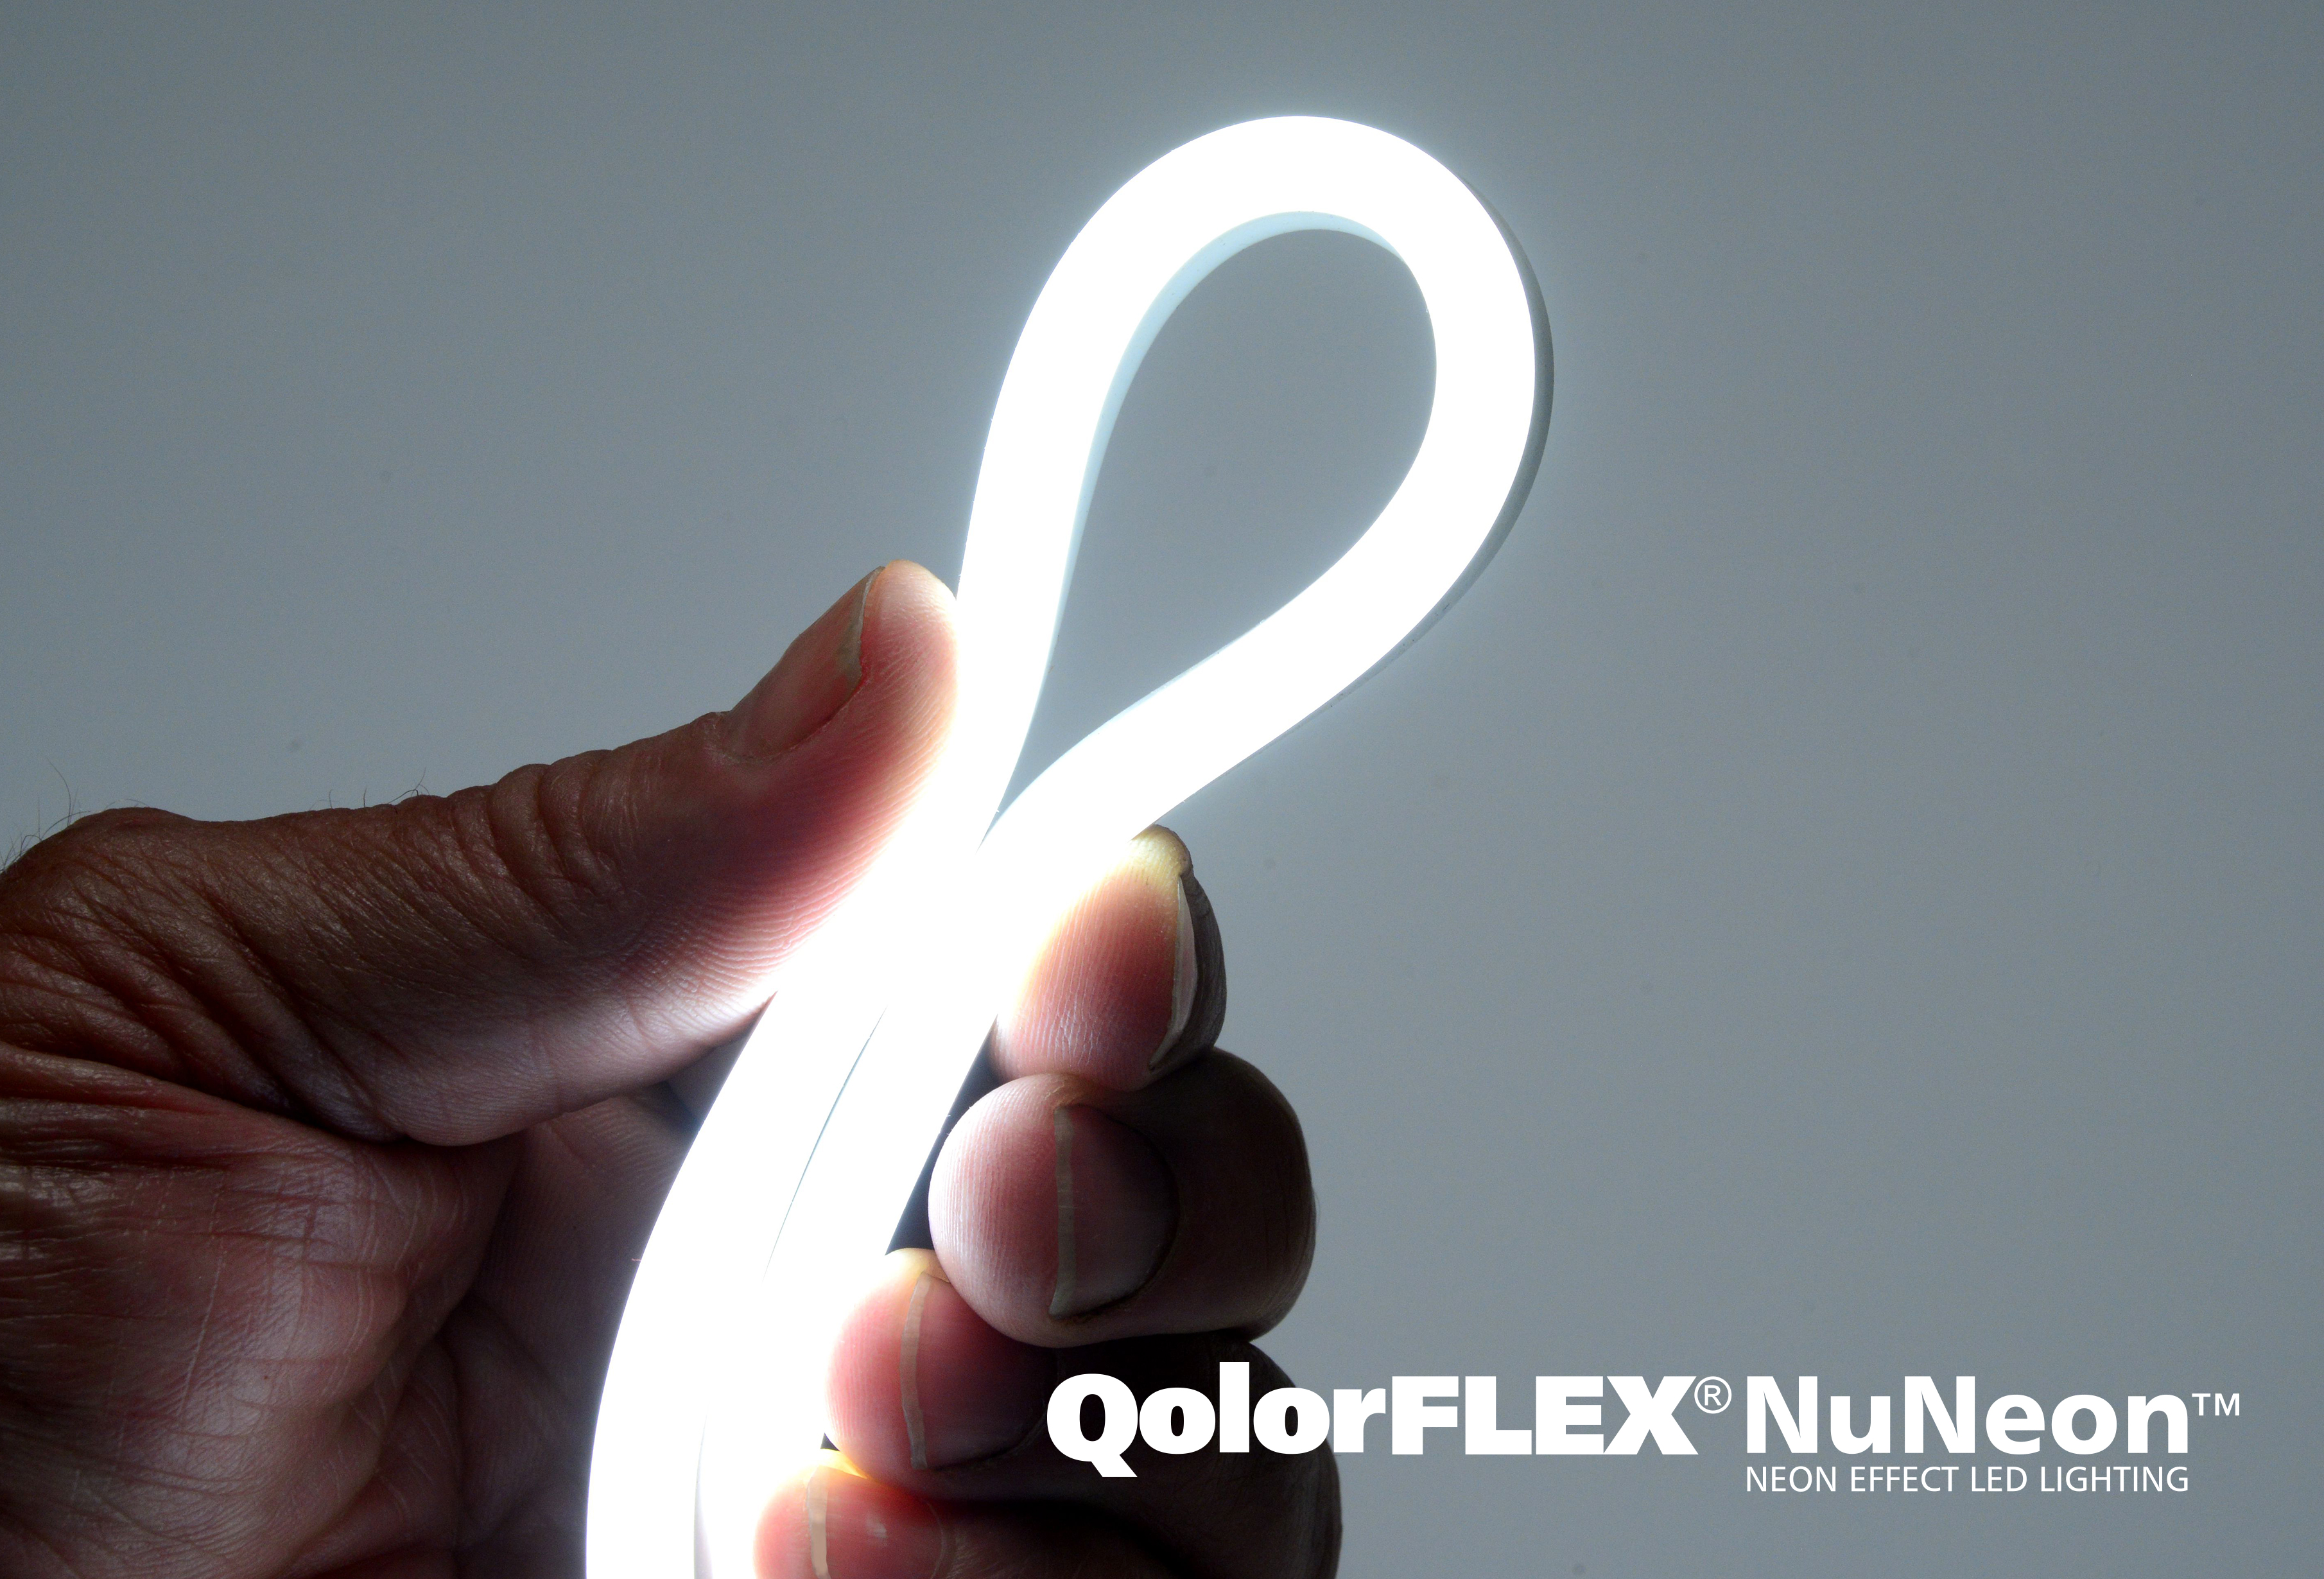 QolorFLEX NuNeon is extremely flexible